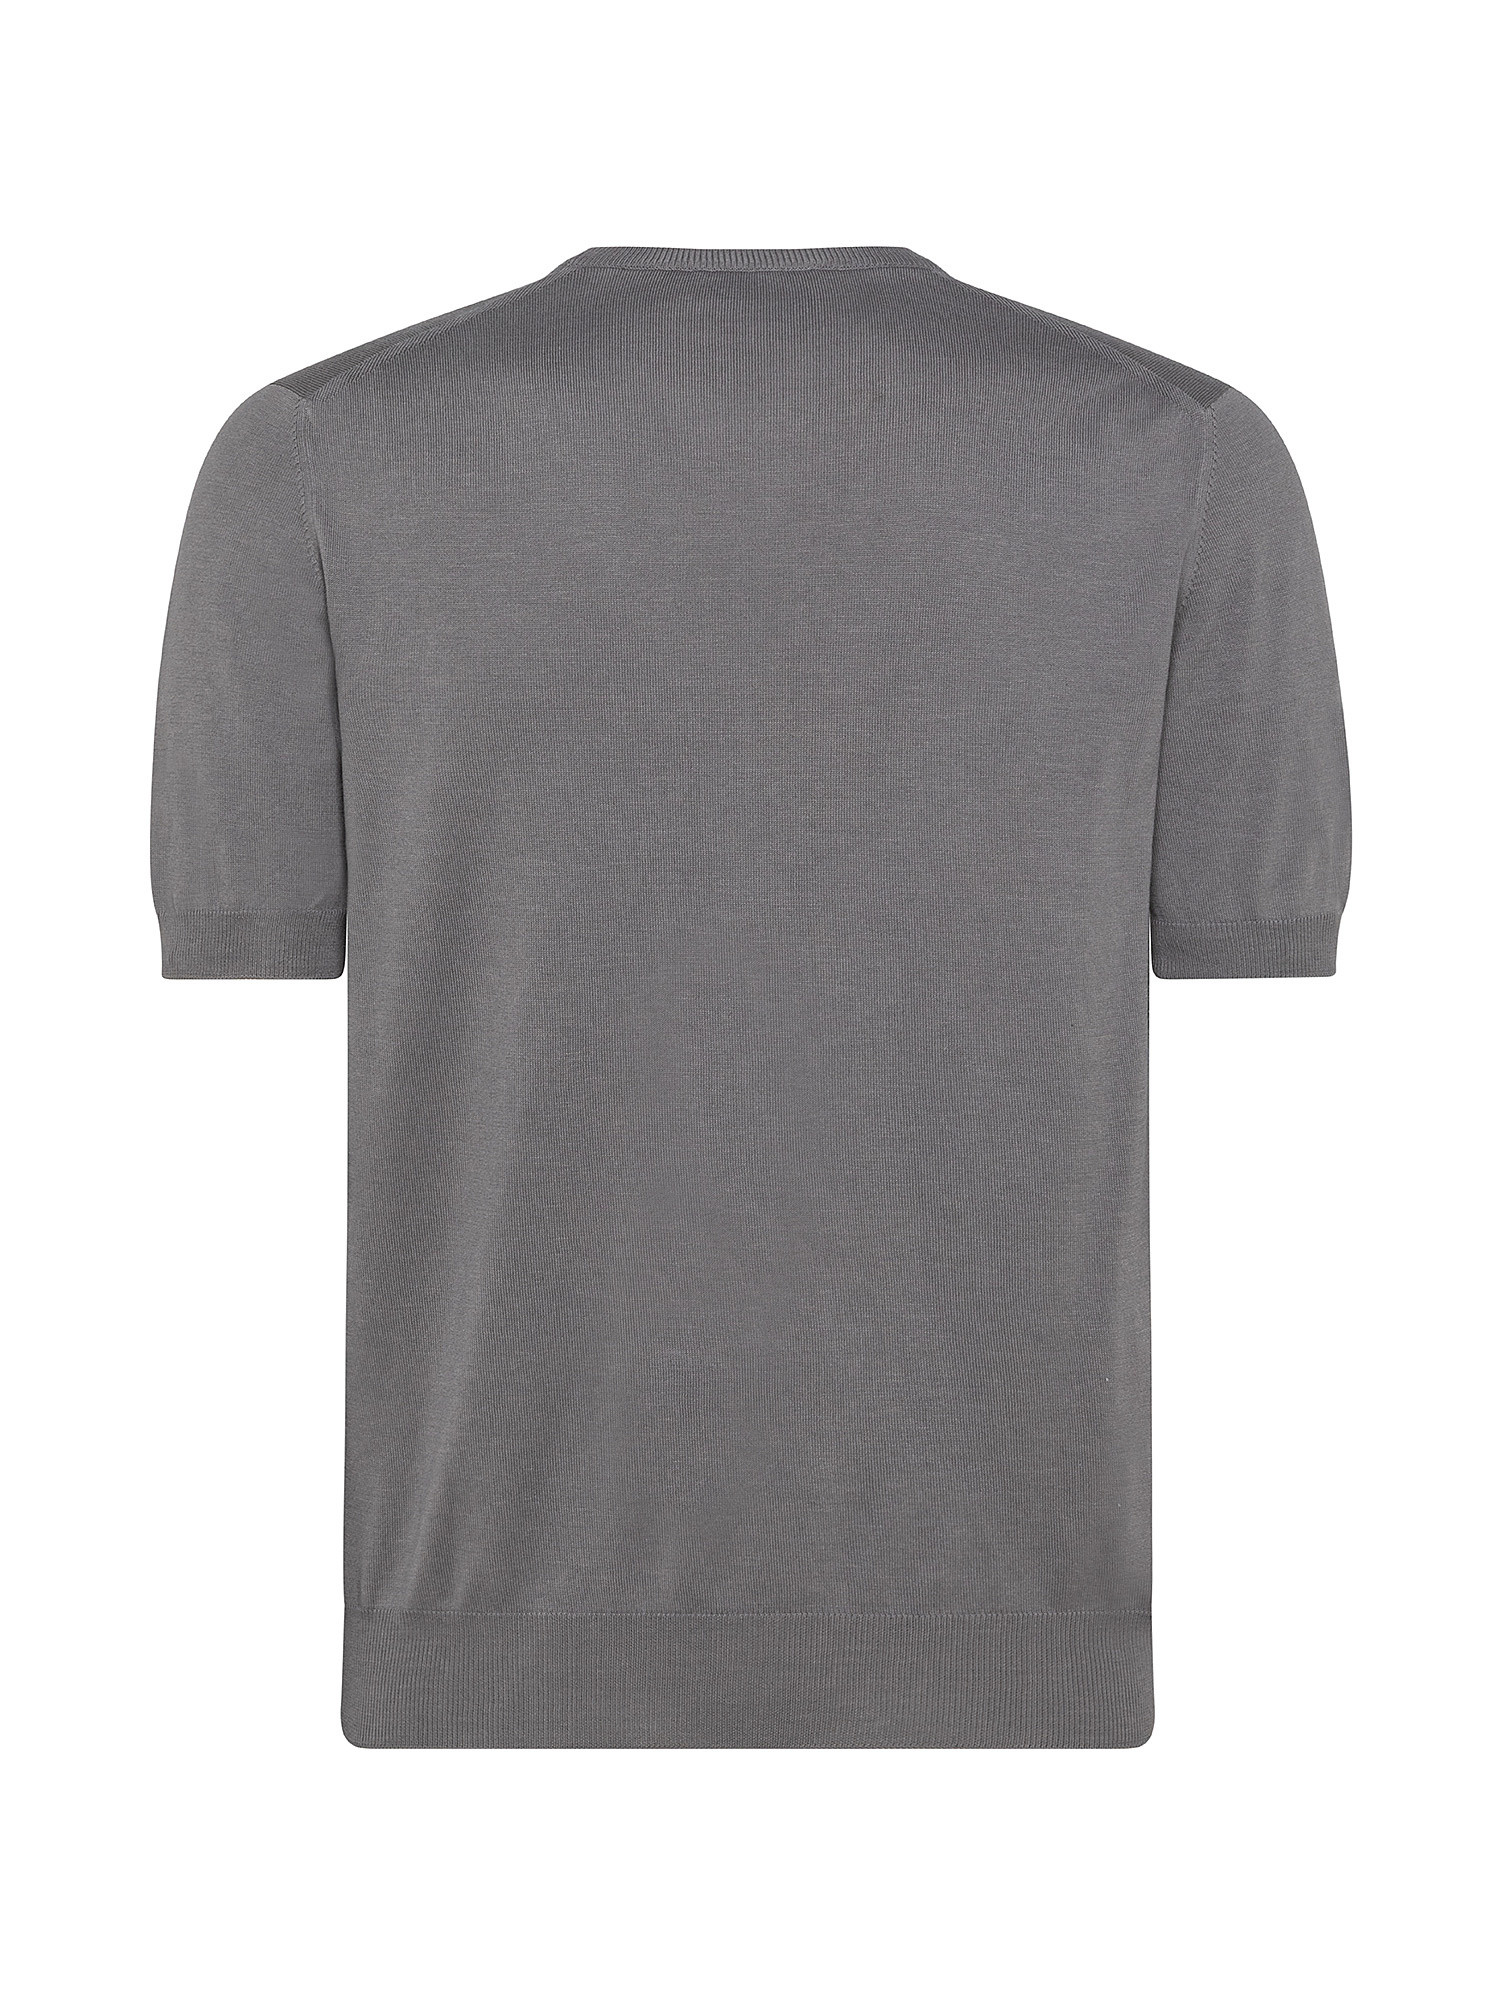 T-shirt in maglia a maniche corte in sottile cotone organico biologico effetto Vintage, Grigio tortora, large image number 1